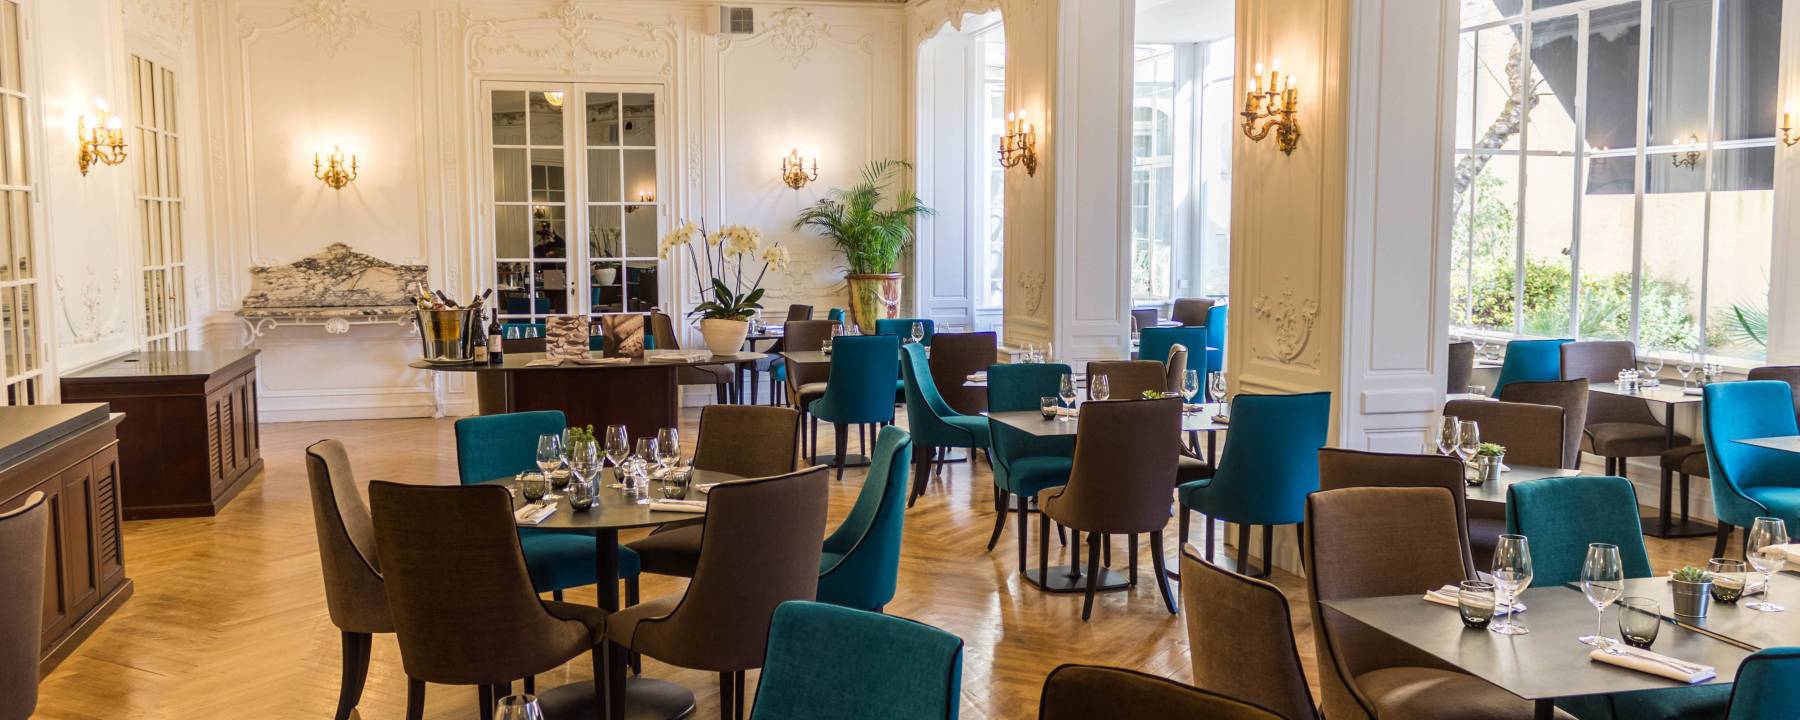 Recrutement: Réceptionniste Tournant F/H chez Oceania Hotels à Montpellier